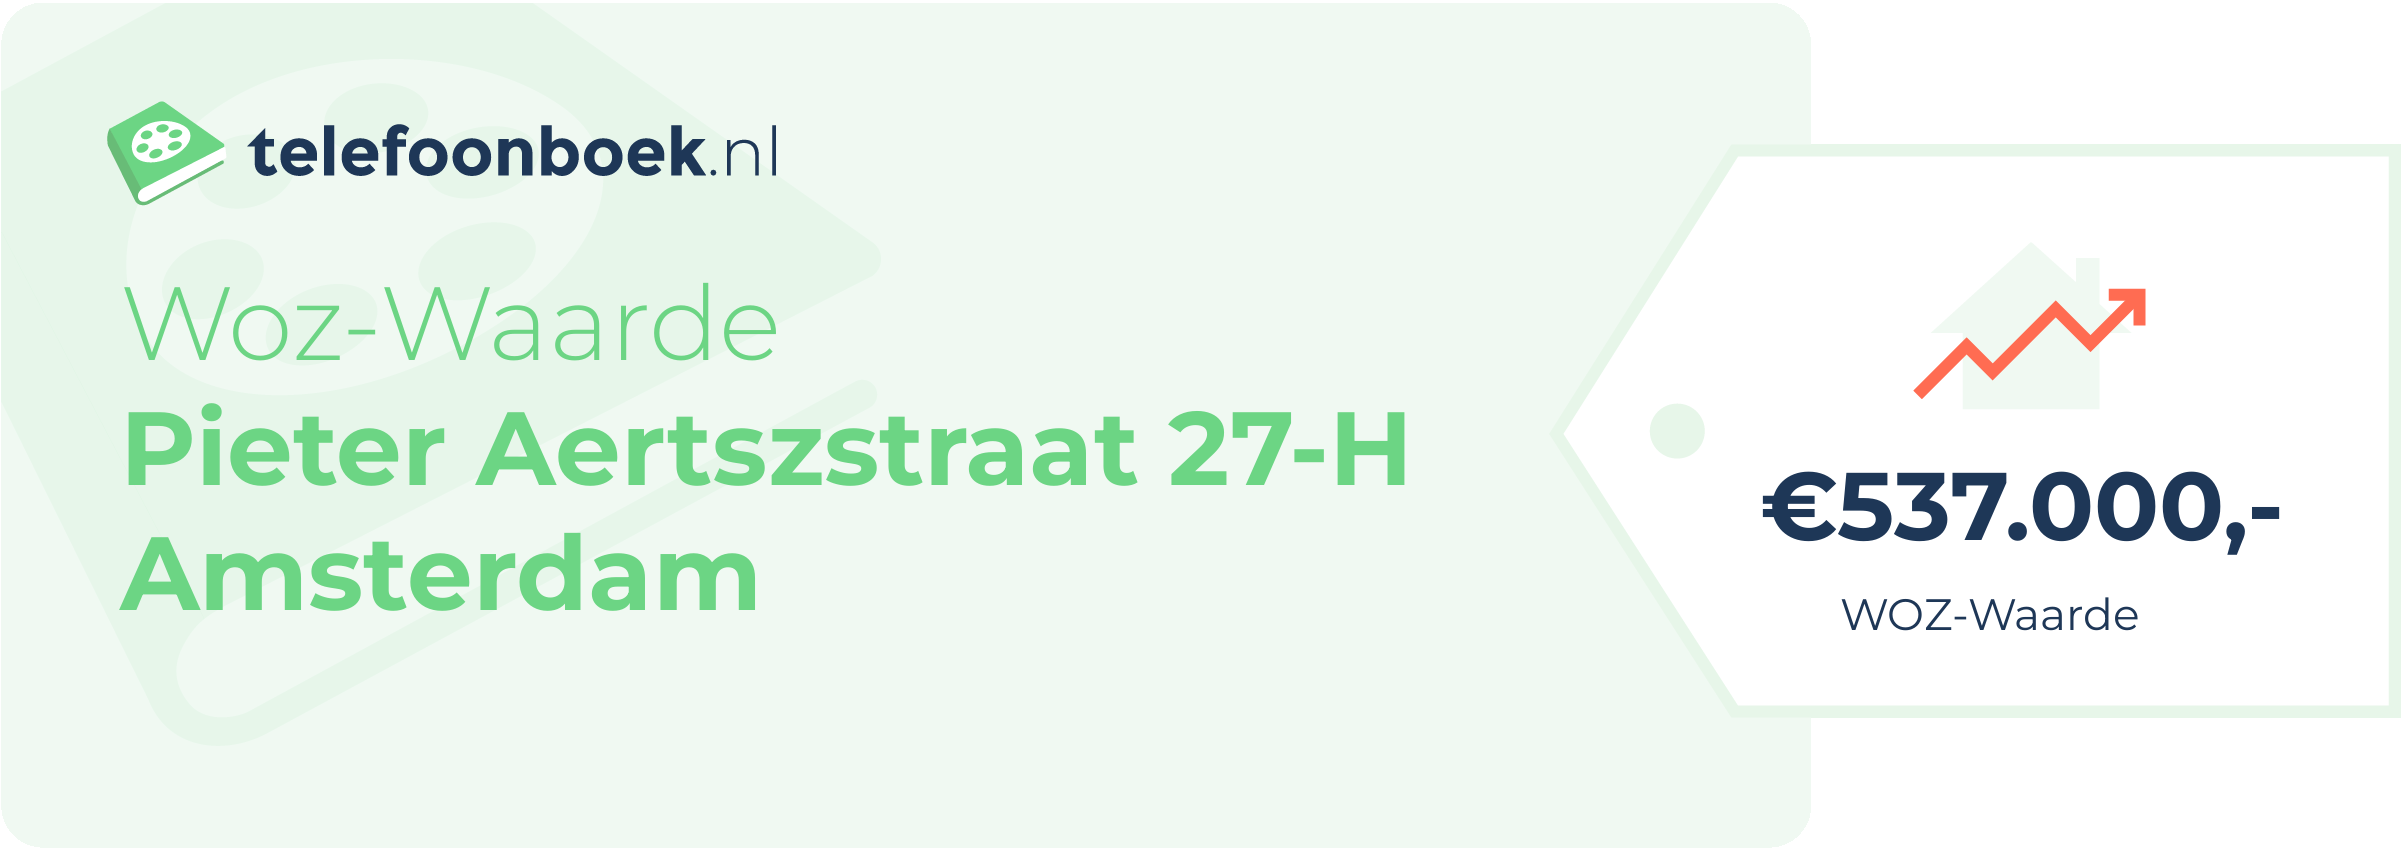 WOZ-waarde Pieter Aertszstraat 27-H Amsterdam